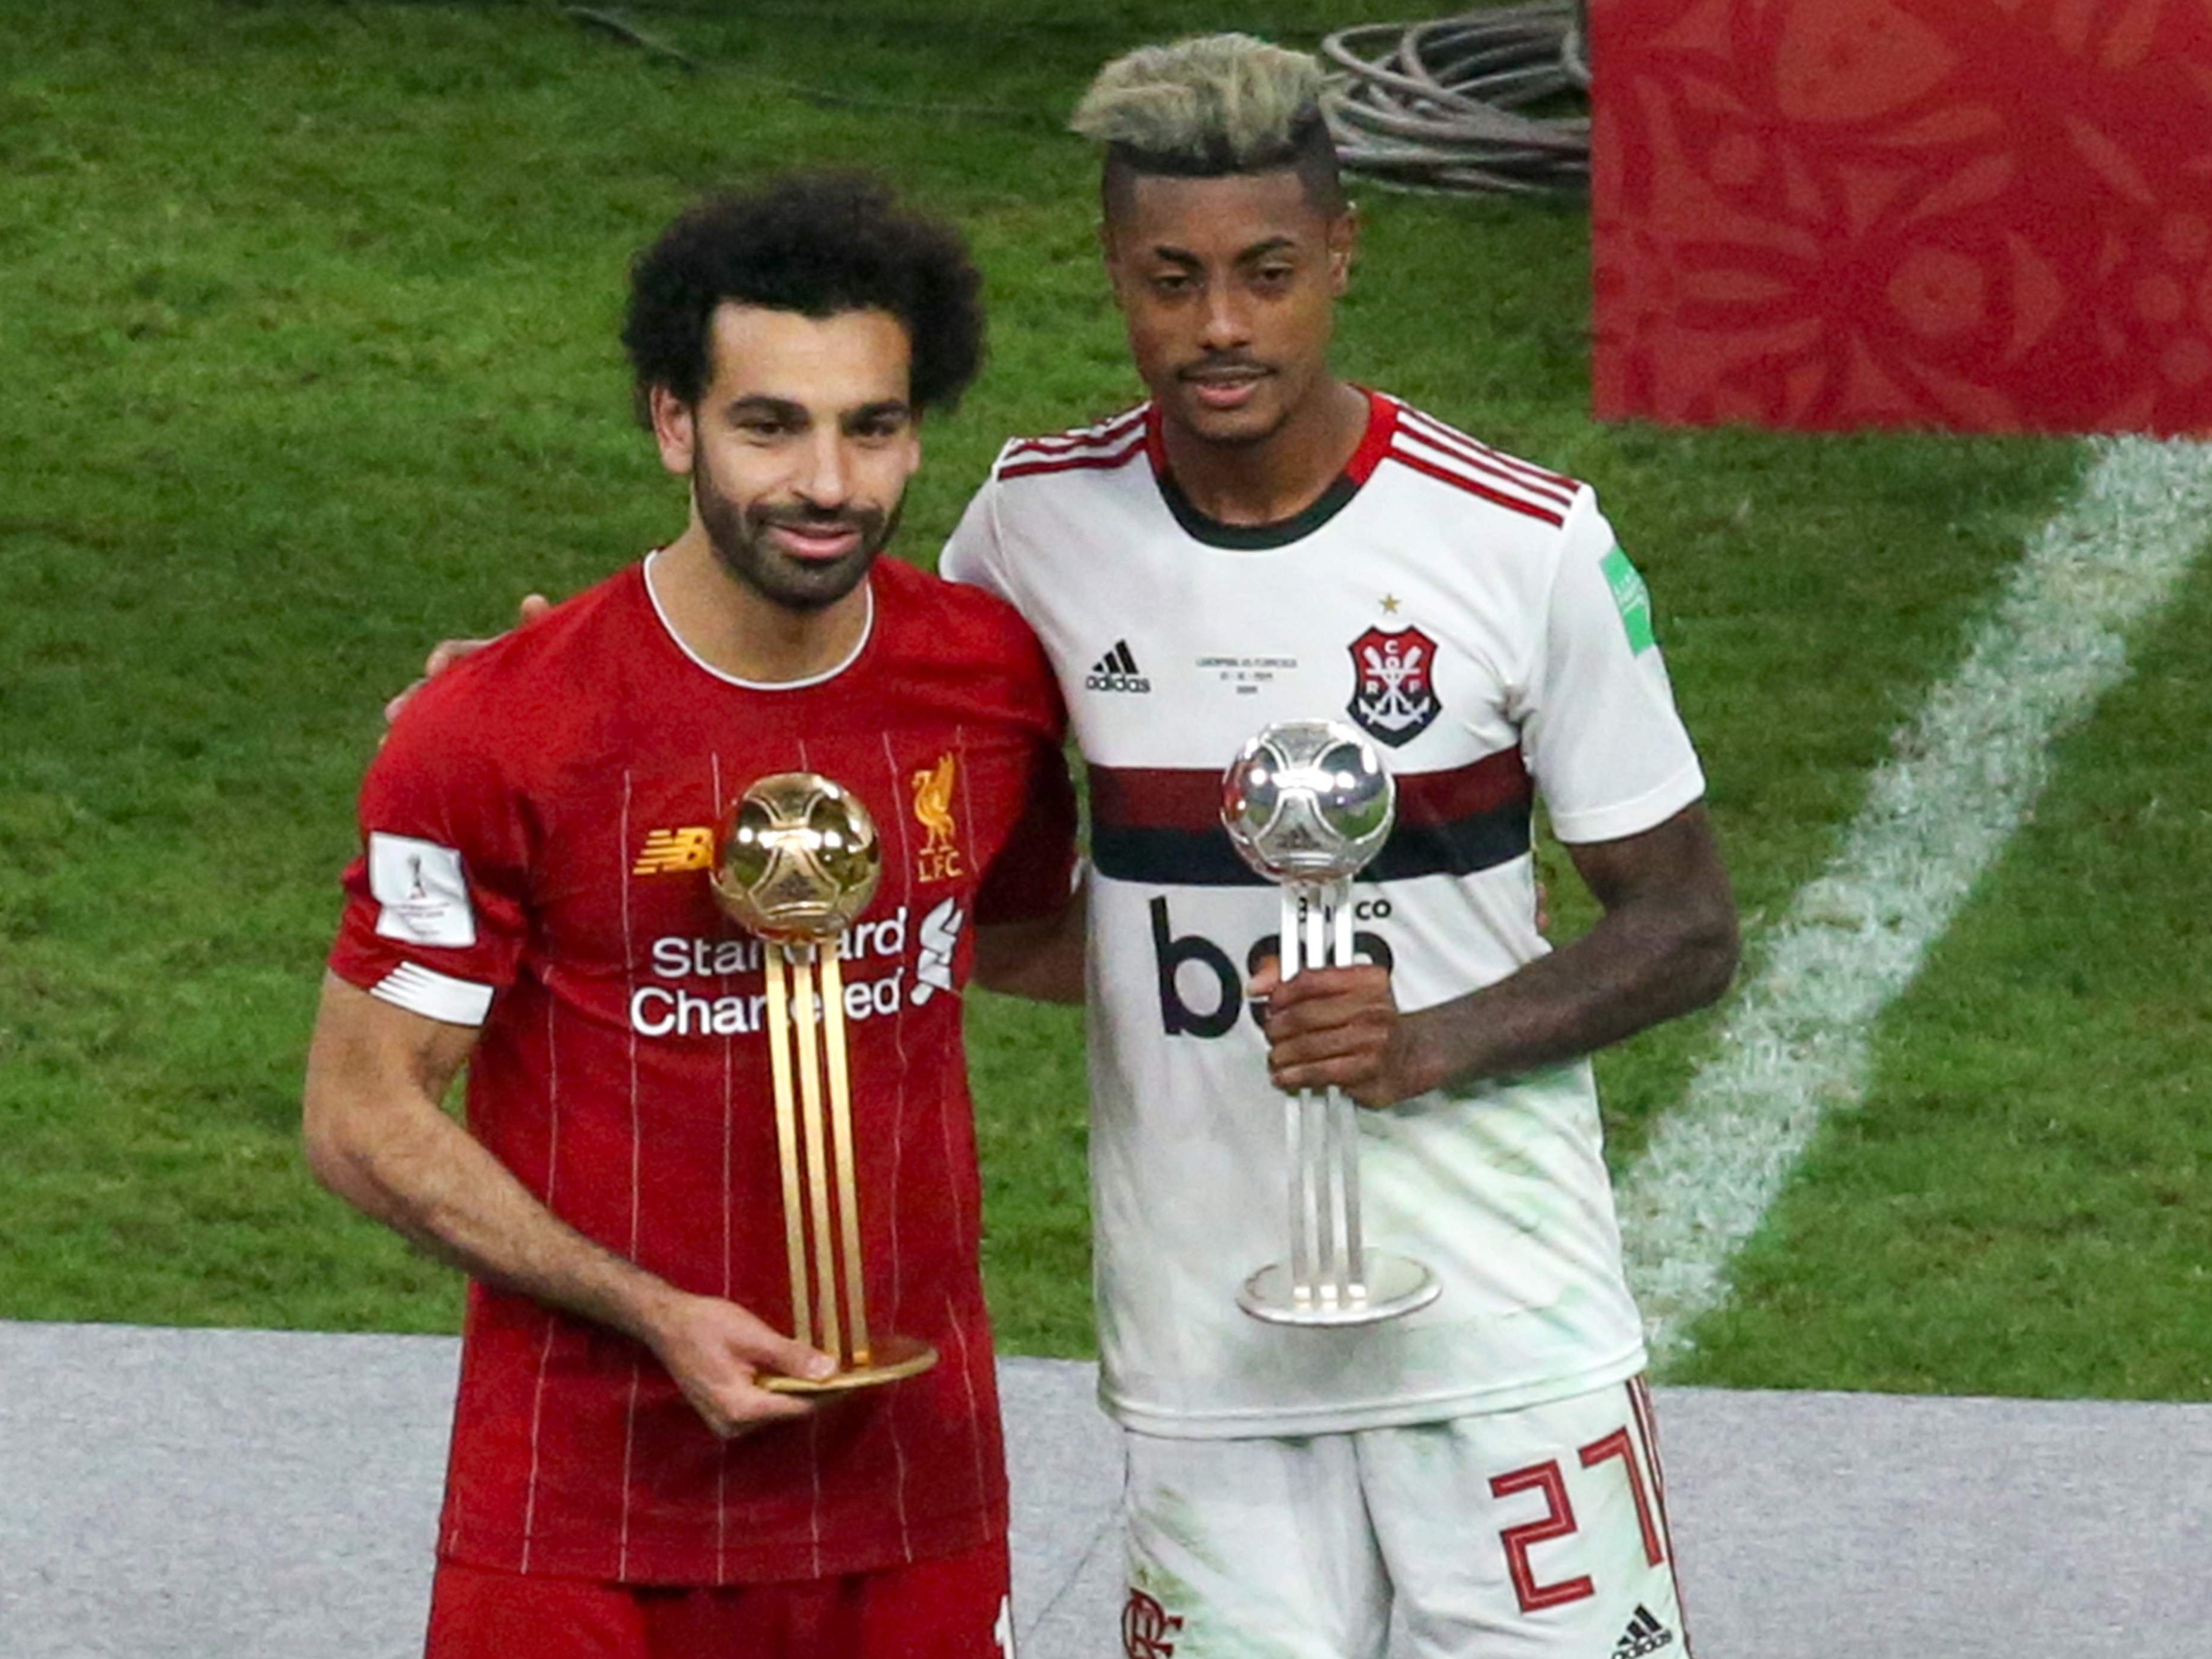 Mundial de Clubes: Salah é eleito o melhor jogador do Mundial